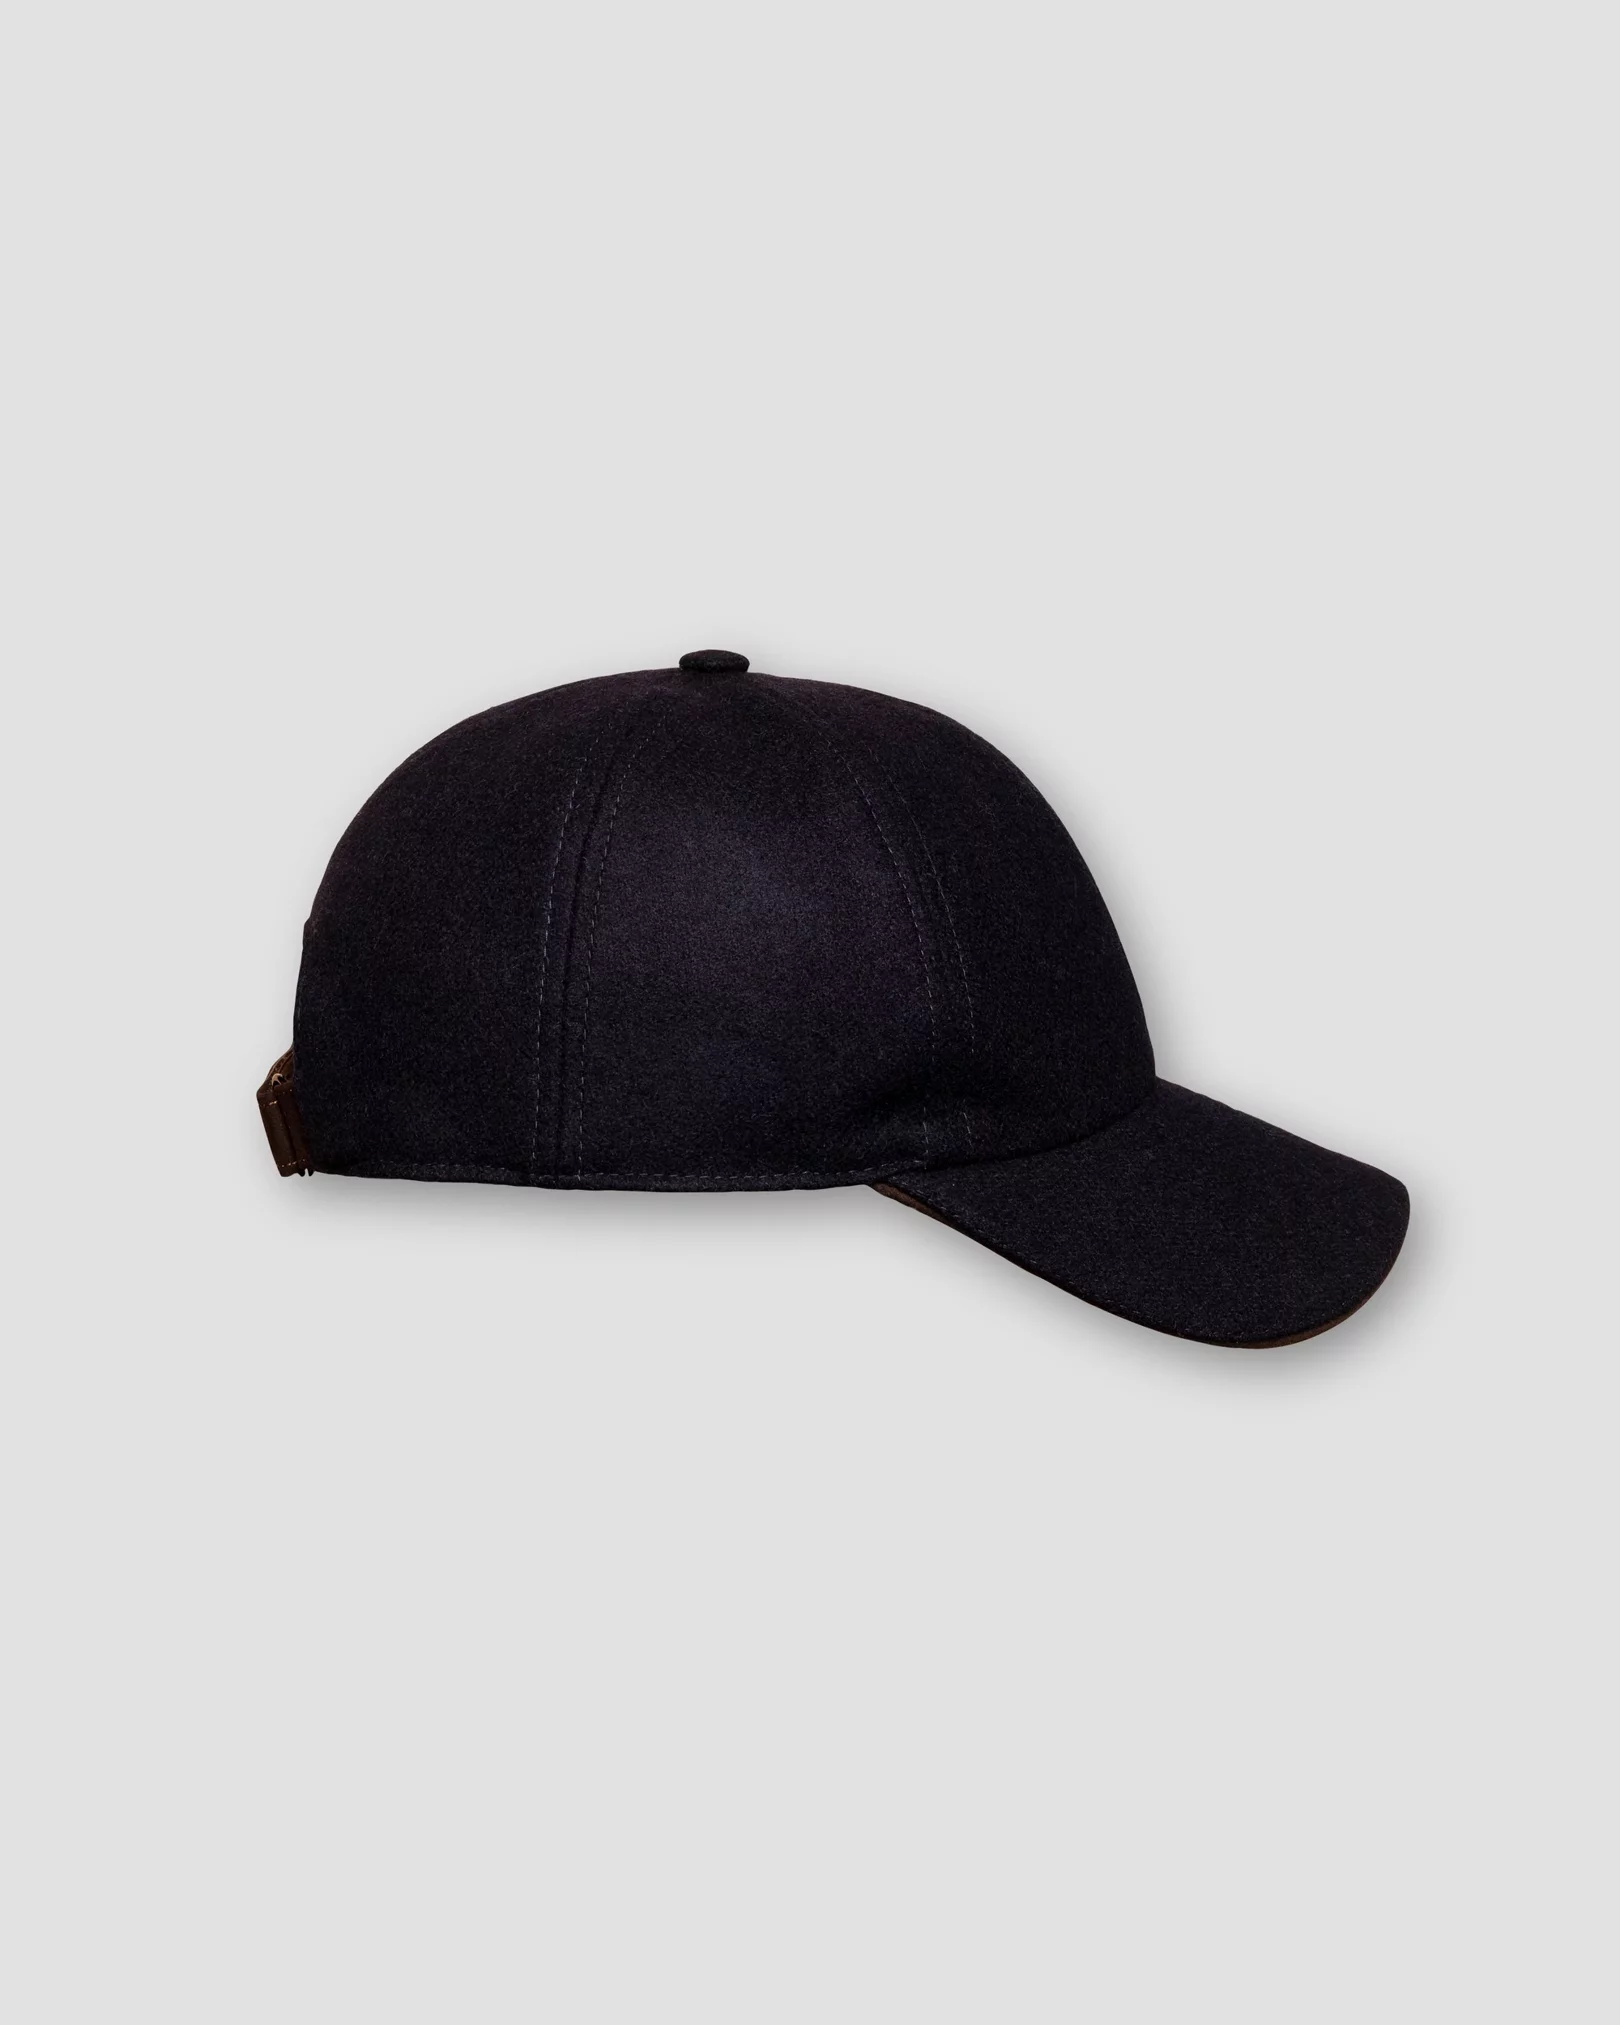 Eton - navy blue wool cap